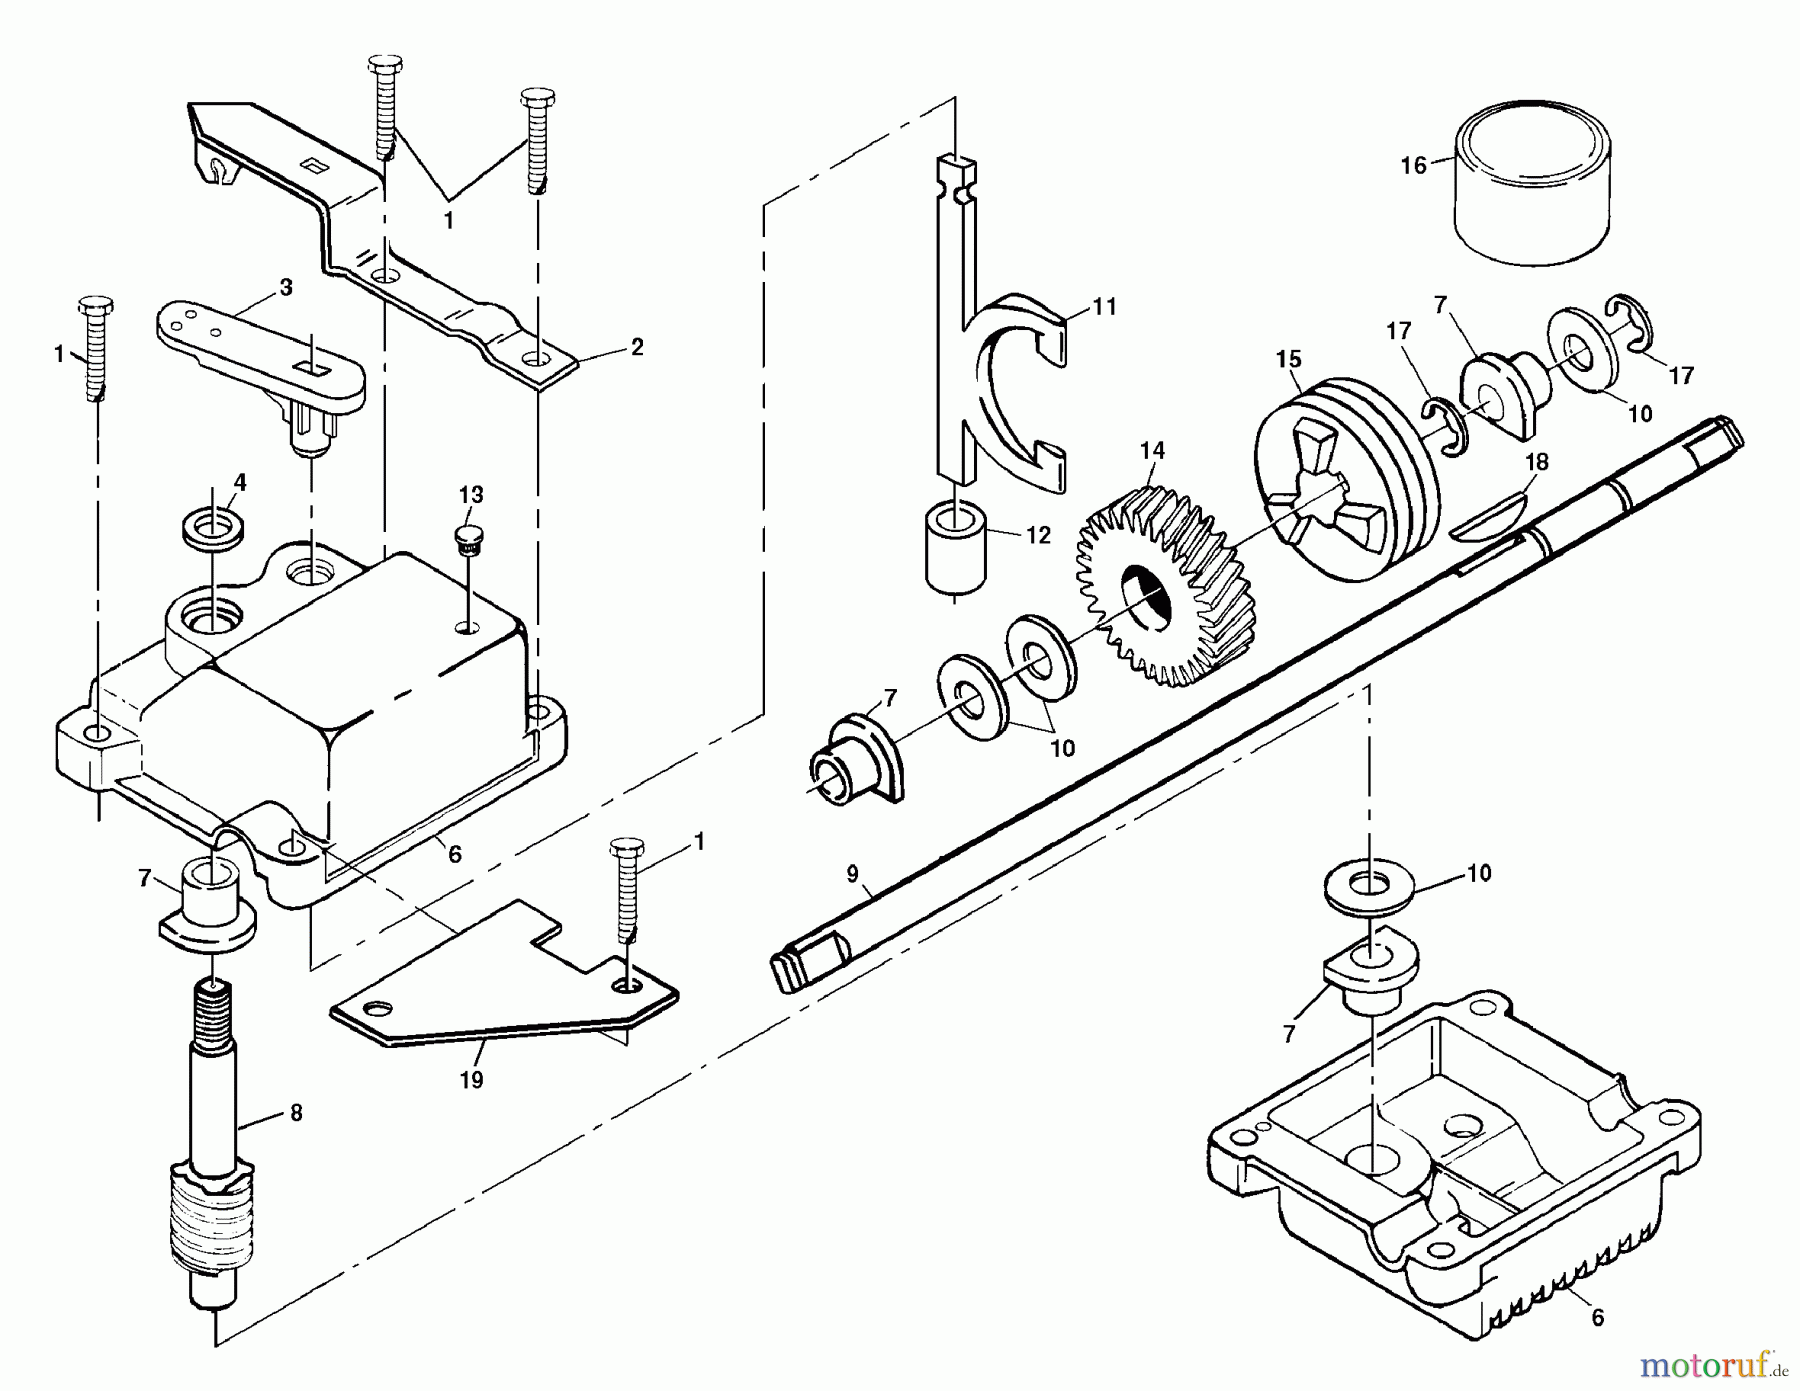  Husqvarna Rasenmäher 6522 SFA (954222718) - Husqvarna Walk-Behind Mower (2000-01 & After) Gear Case Assembly